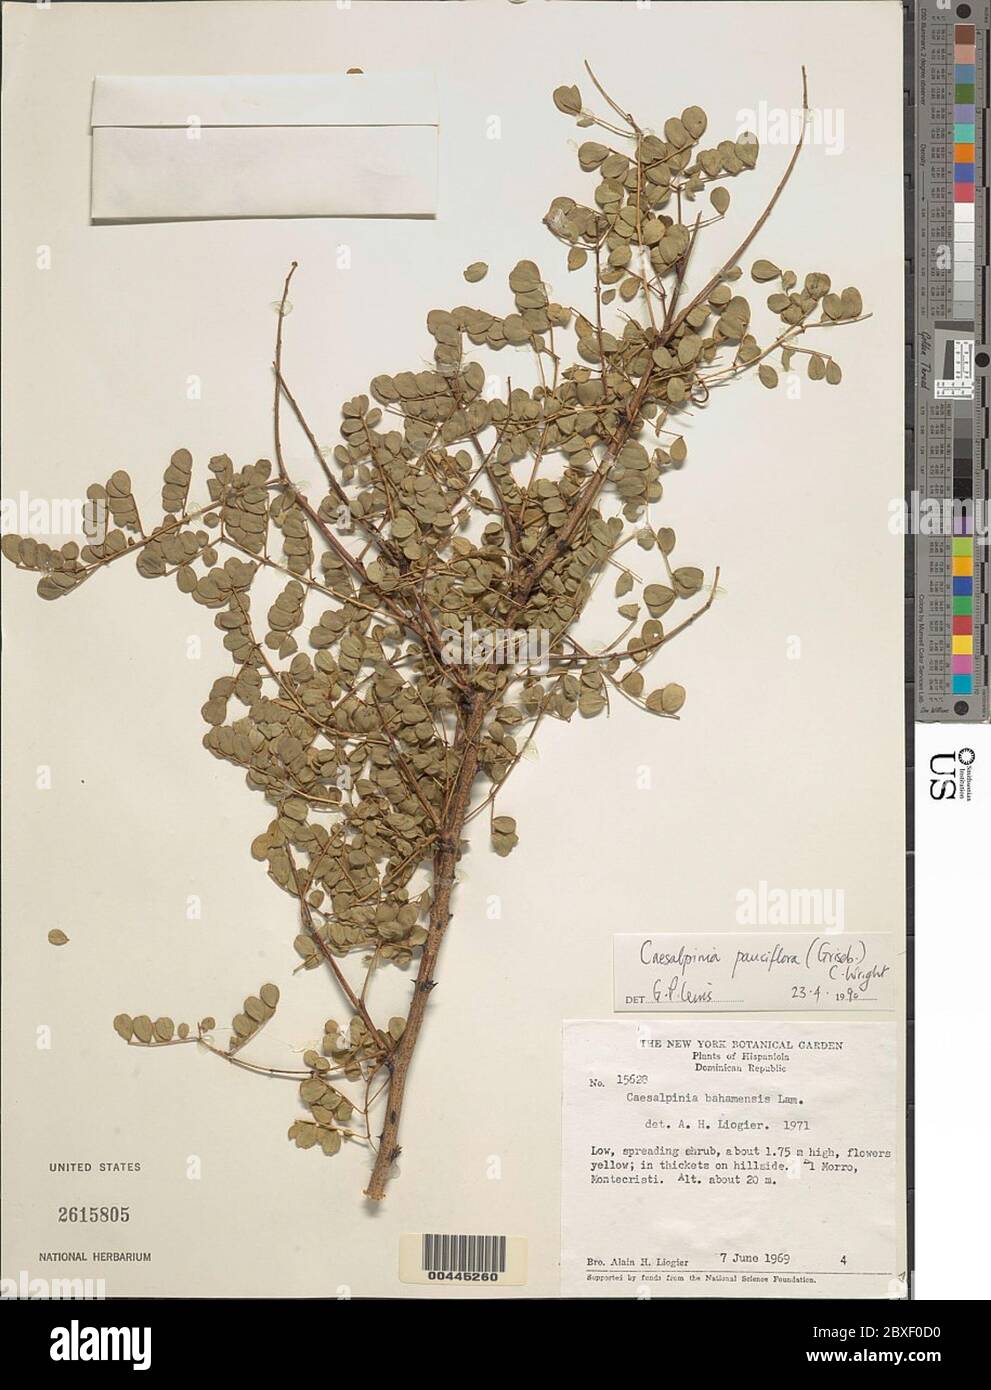 Caesalpinia pauciflora Griseb C Wright Caesalpinia pauciflora Griseb C Wright. Stock Photo